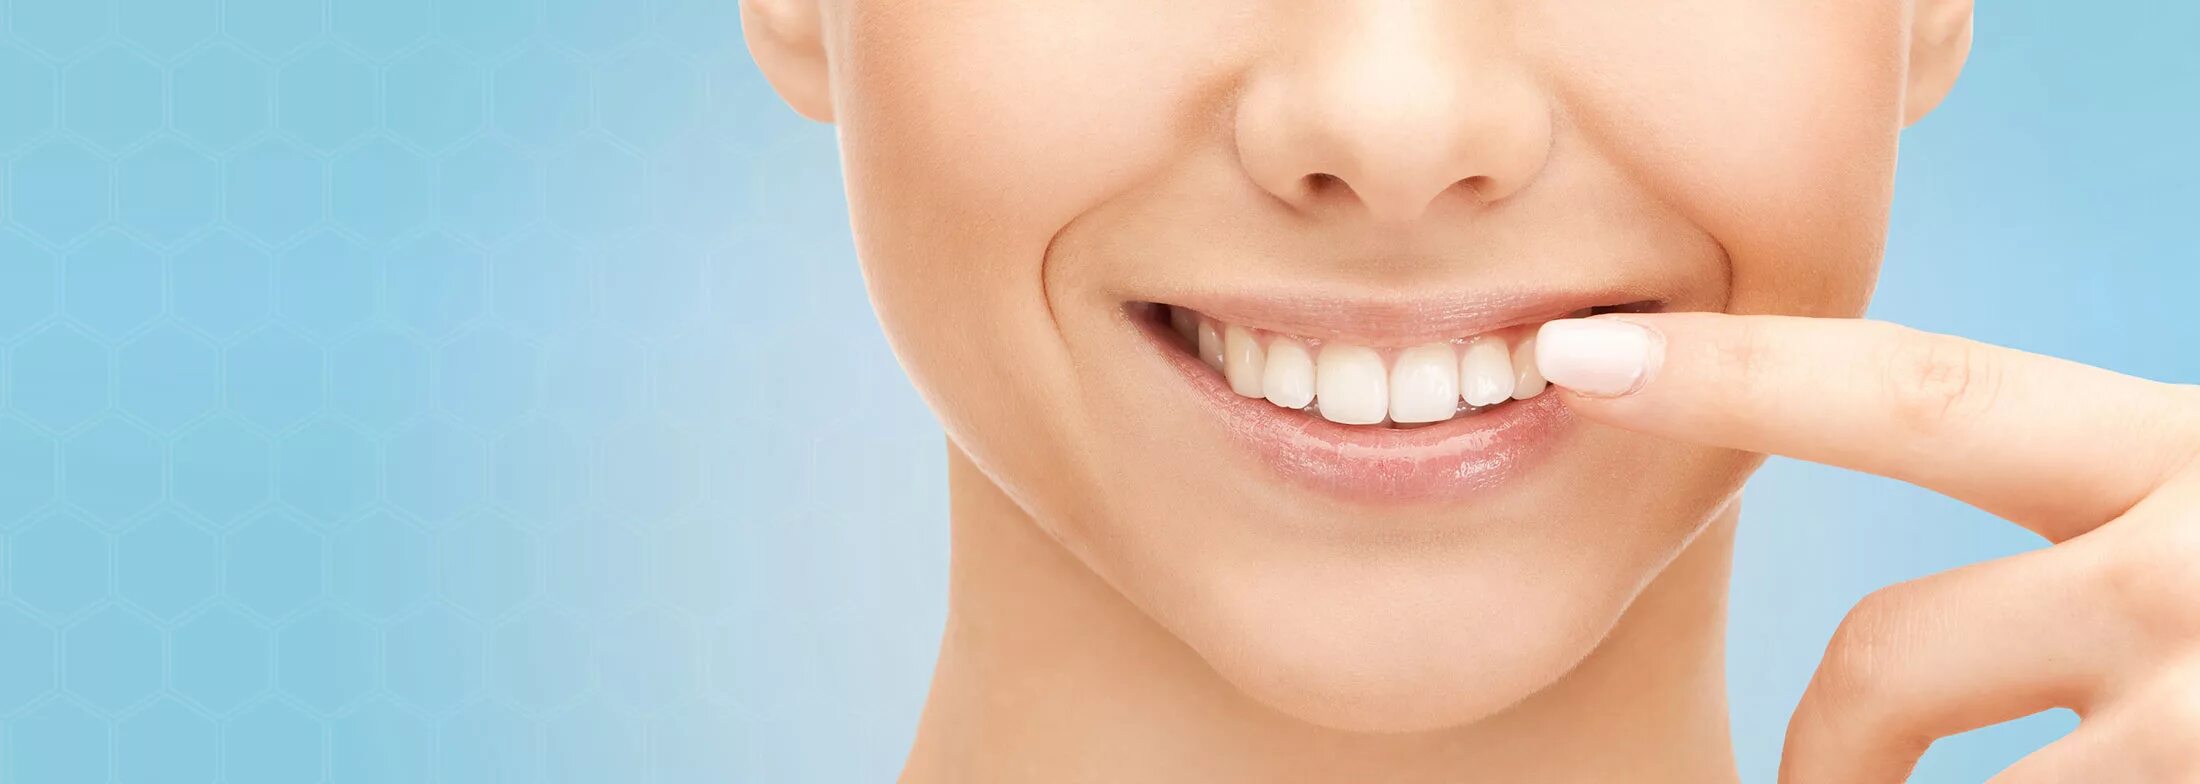 Центр здоровья зубов. Красивые зубы. Красивая улыбка. Здоровые зубы. Здоровые зубы красивая улыбка.